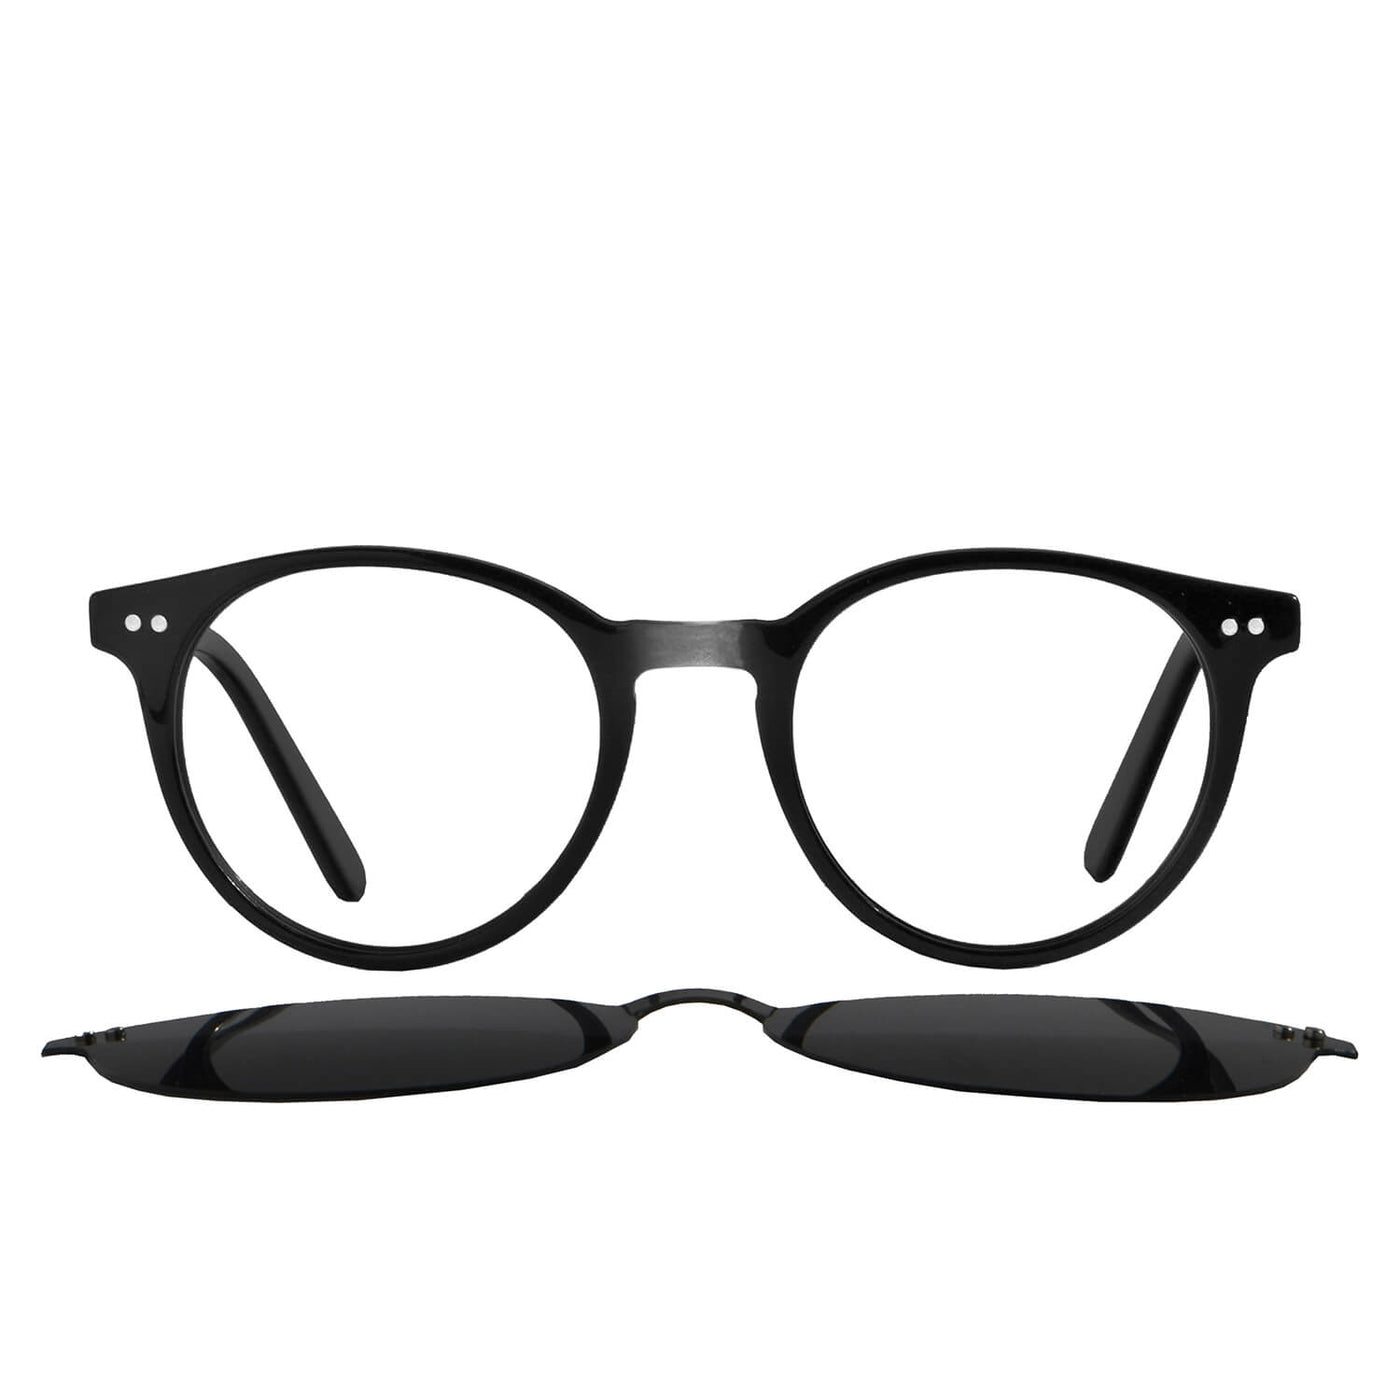 Vista frontal de marco óptico redondo para hombre y mujer con clip polarizado para el sol. Compra tus lentes ópticos con receta oftalmológica online.